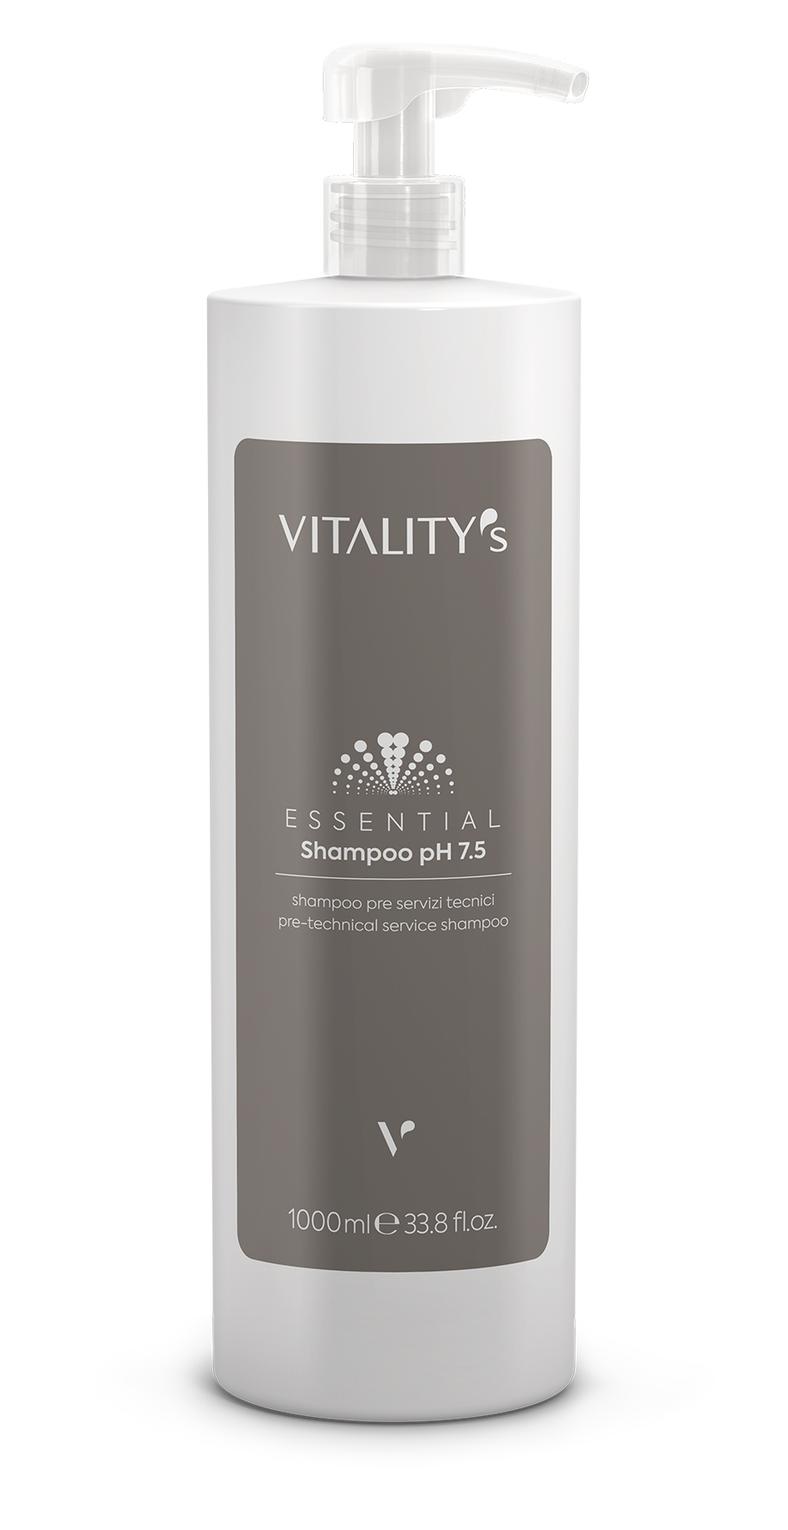 Vitality's Essential Shampoo 1000ml pH 7,5